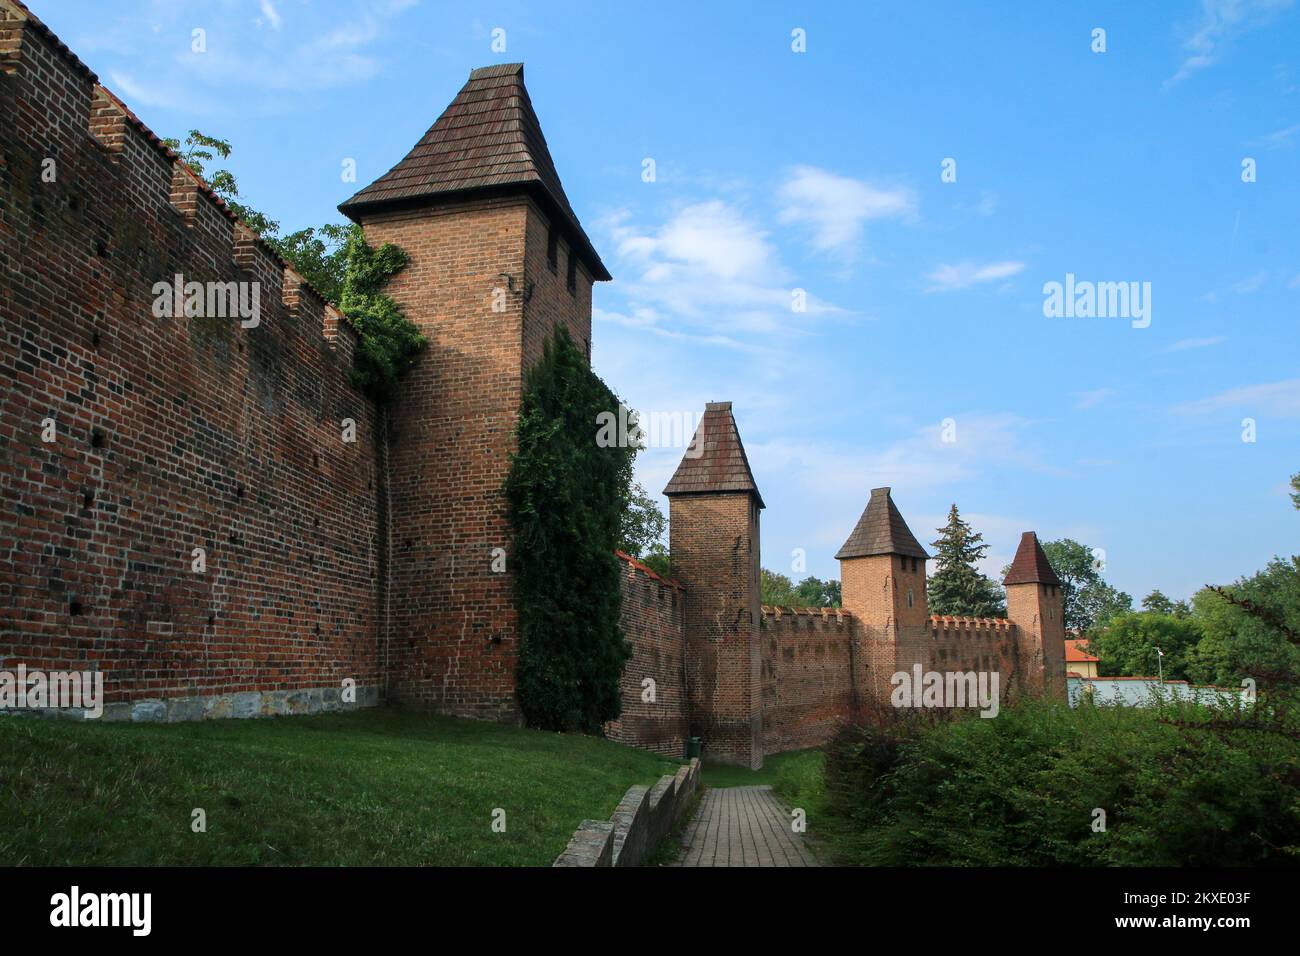 Le vecchie mura di mattoni della città di Nymburk nella Repubblica Ceca. Il bel punto di riferimento e attrazione per i turisti. Foto Stock